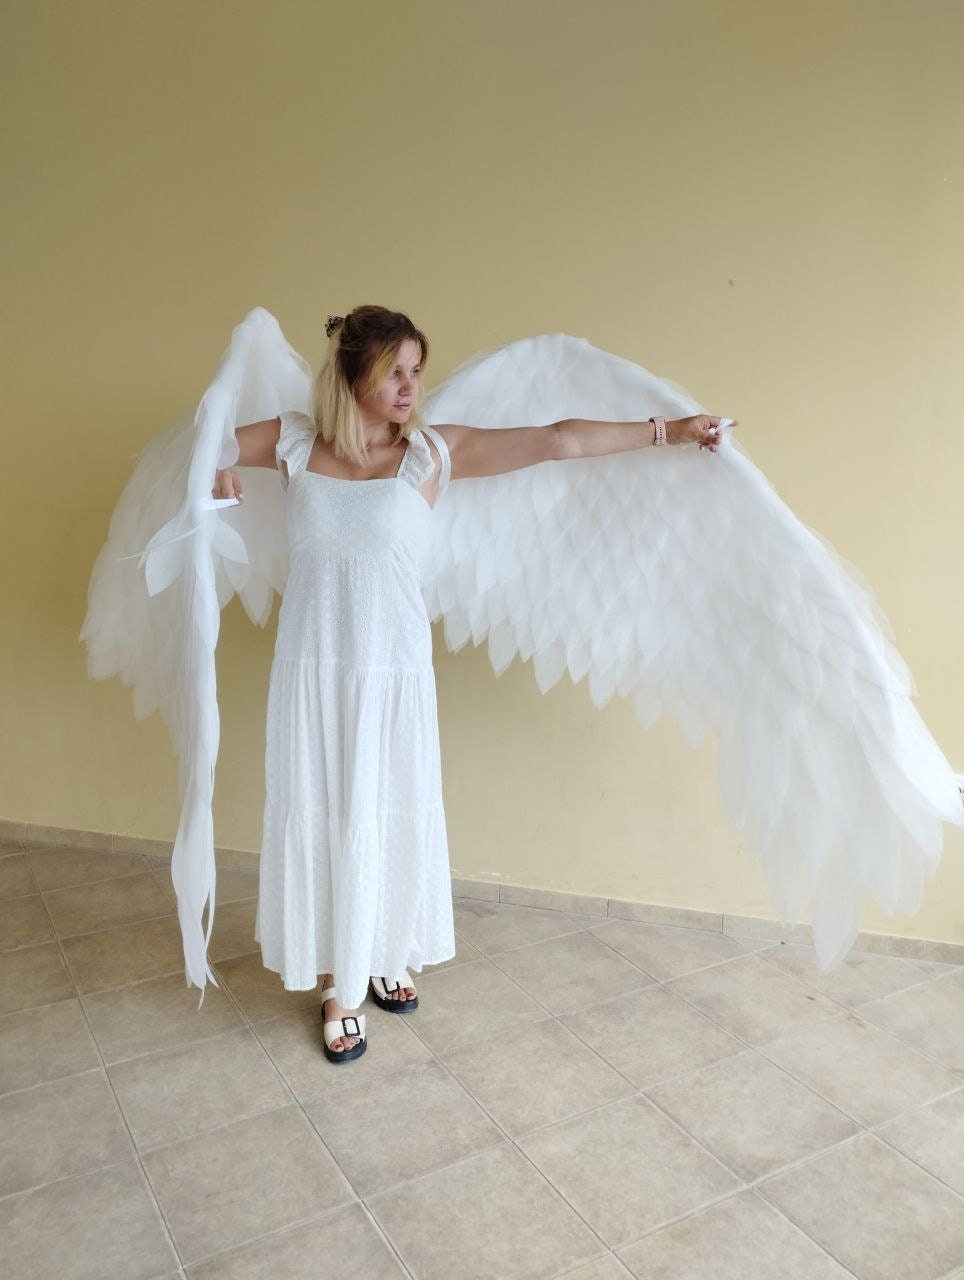 FQQWEE Disfraz de alas de ángel blancas, disfraz de alas de ángel de plumas  blancas iluminadas, alas blancas LED, disfraces de ángel blanco para